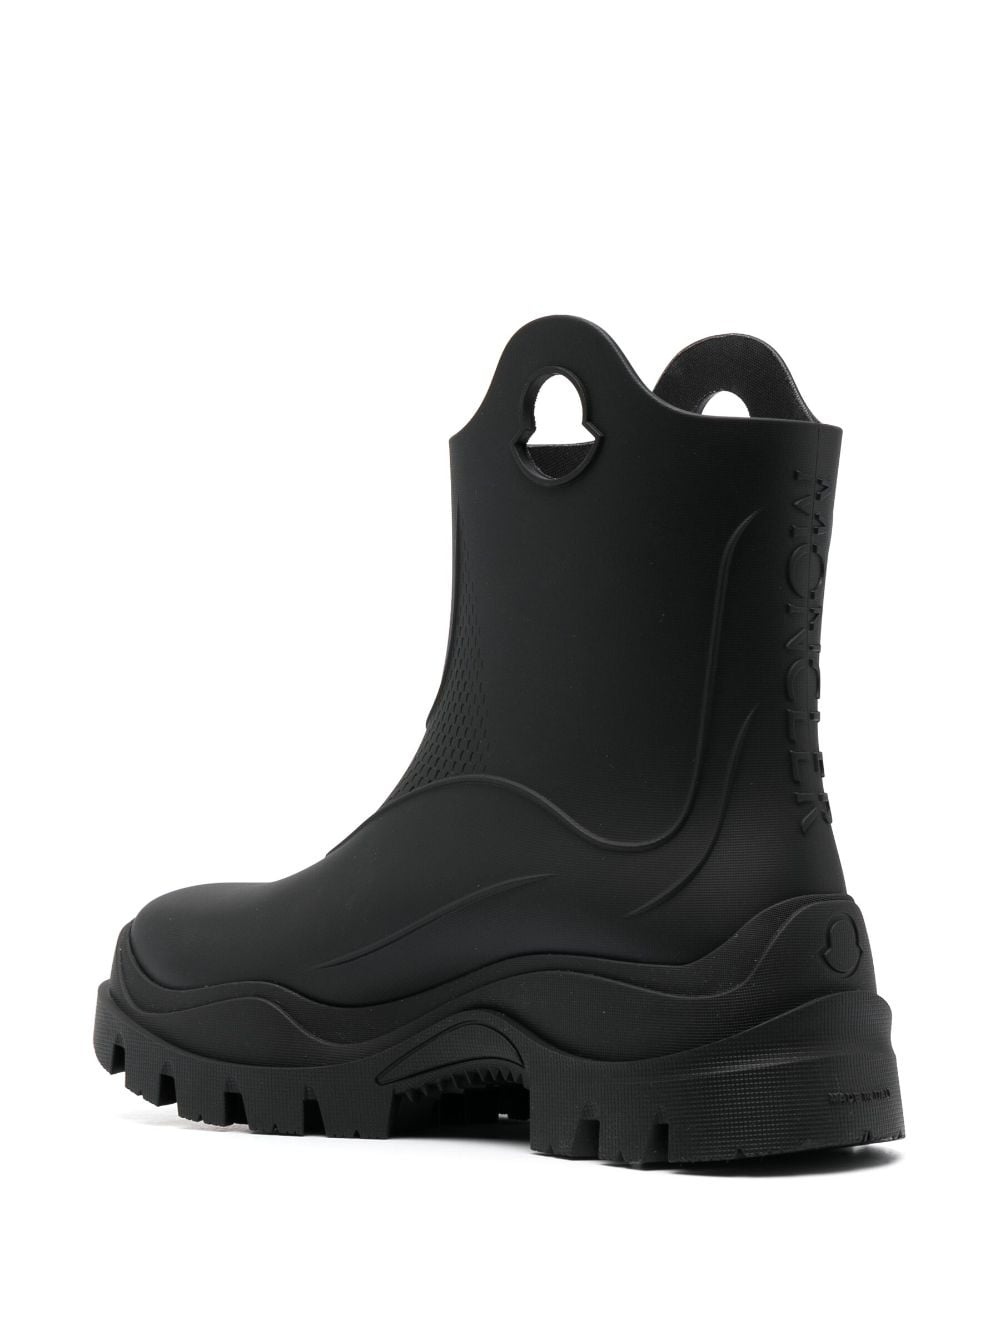 Misty rain boots - 2